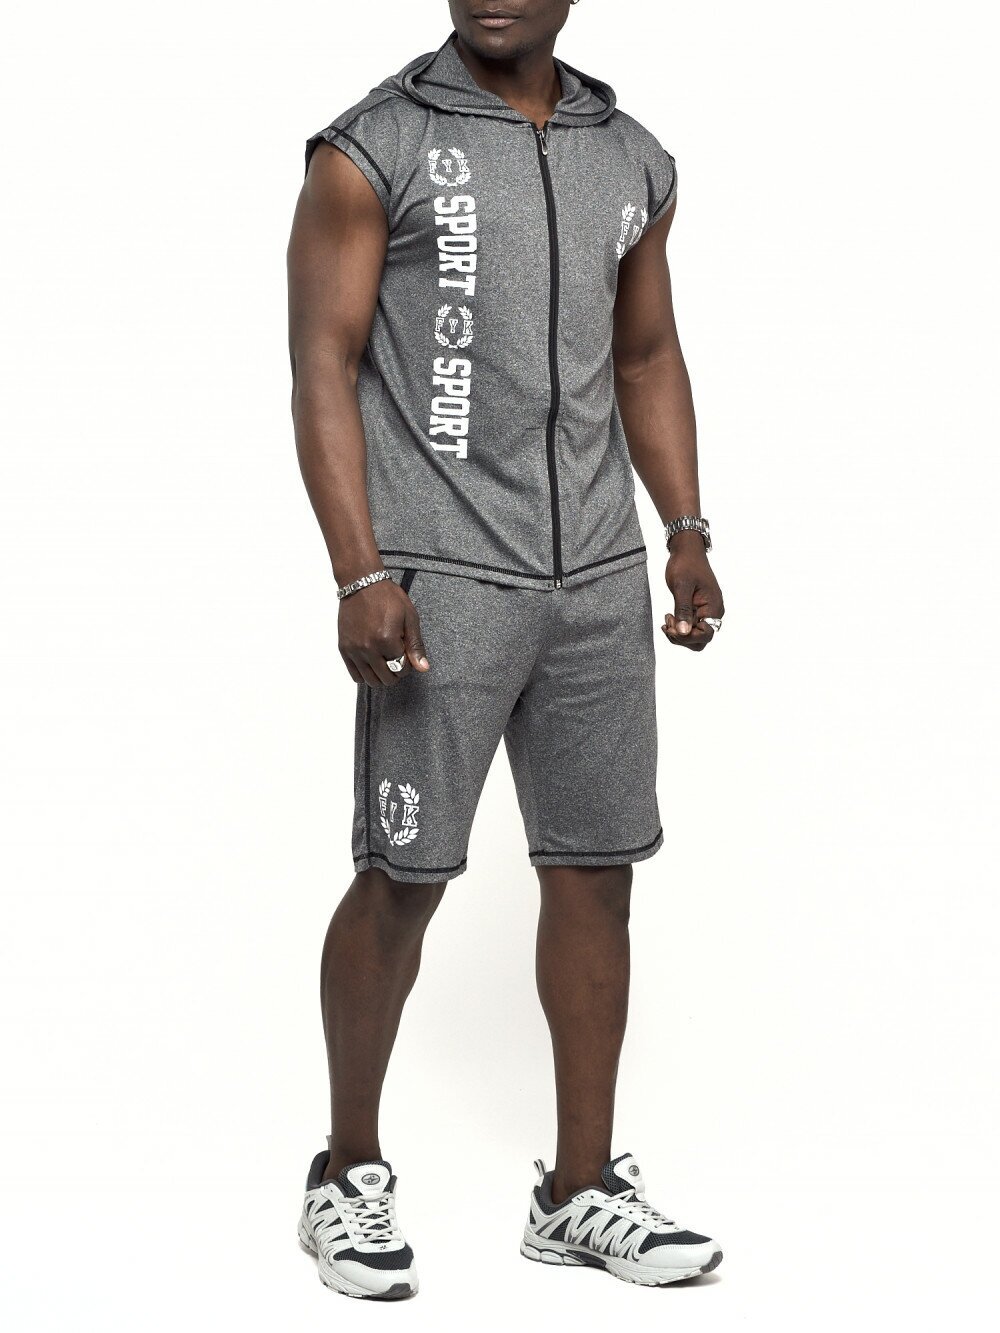 Спортивный комплект мужской - футболка шорты AD2265